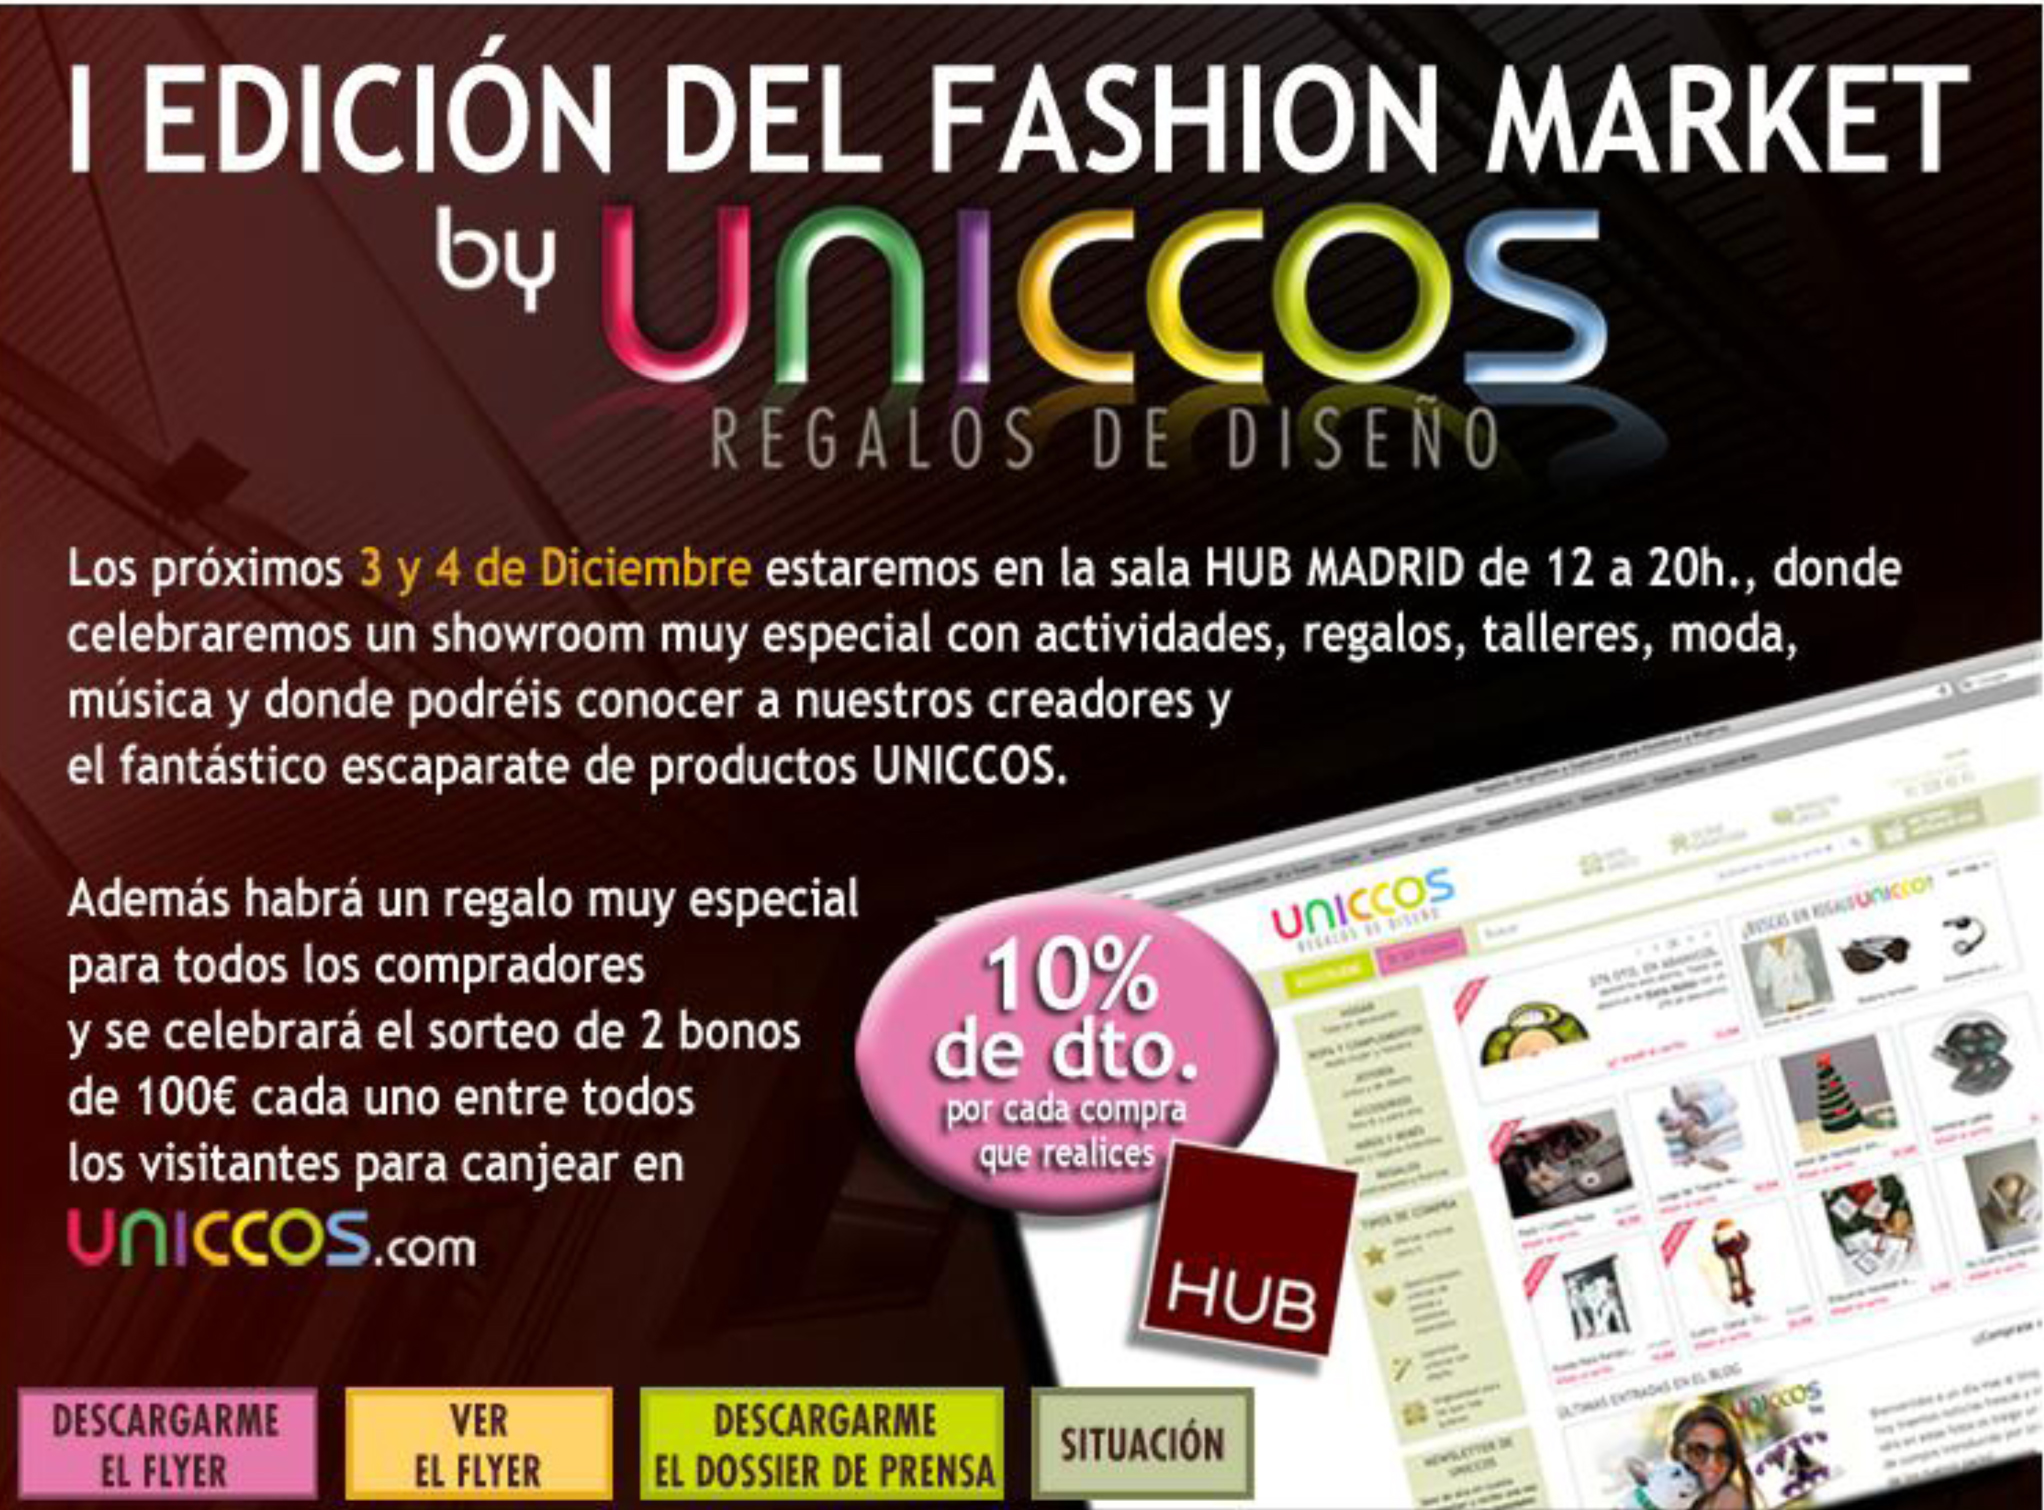 uniccos fashion market